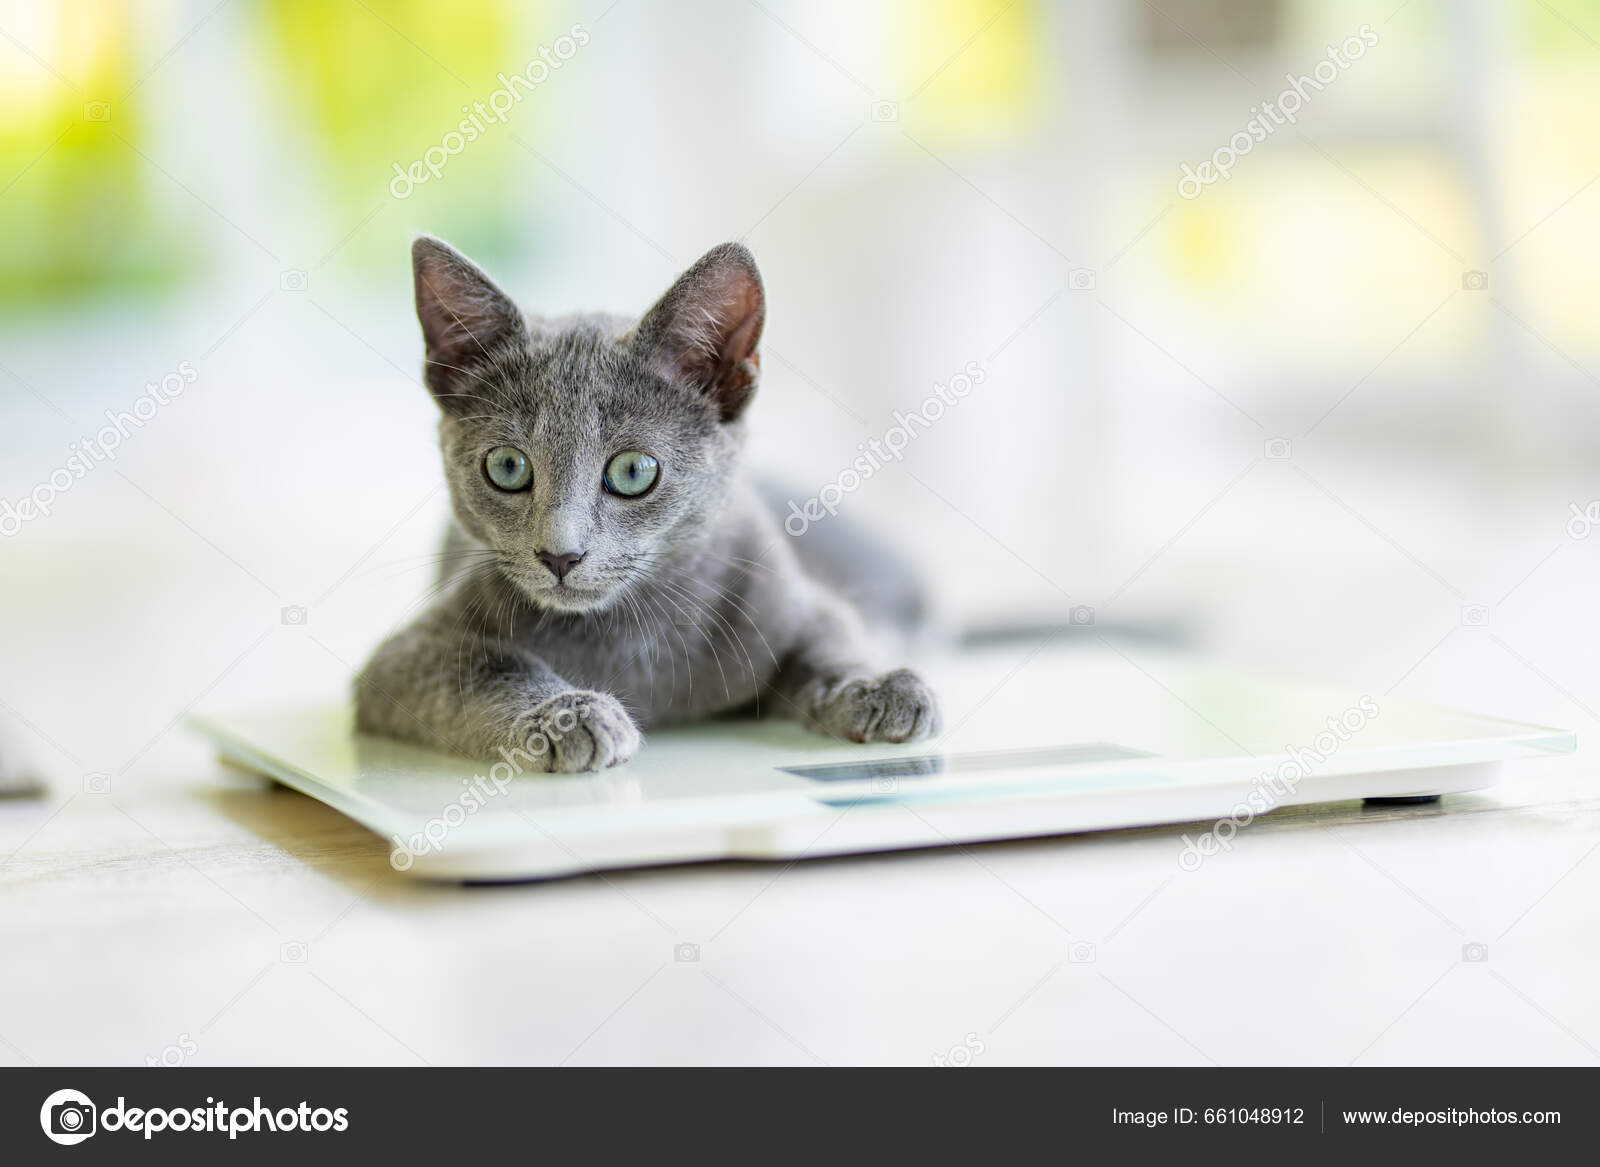 https://st5.depositphotos.com/1000917/66104/i/1600/depositphotos_661048912-stock-photo-young-playful-russian-blue-kitten.jpg